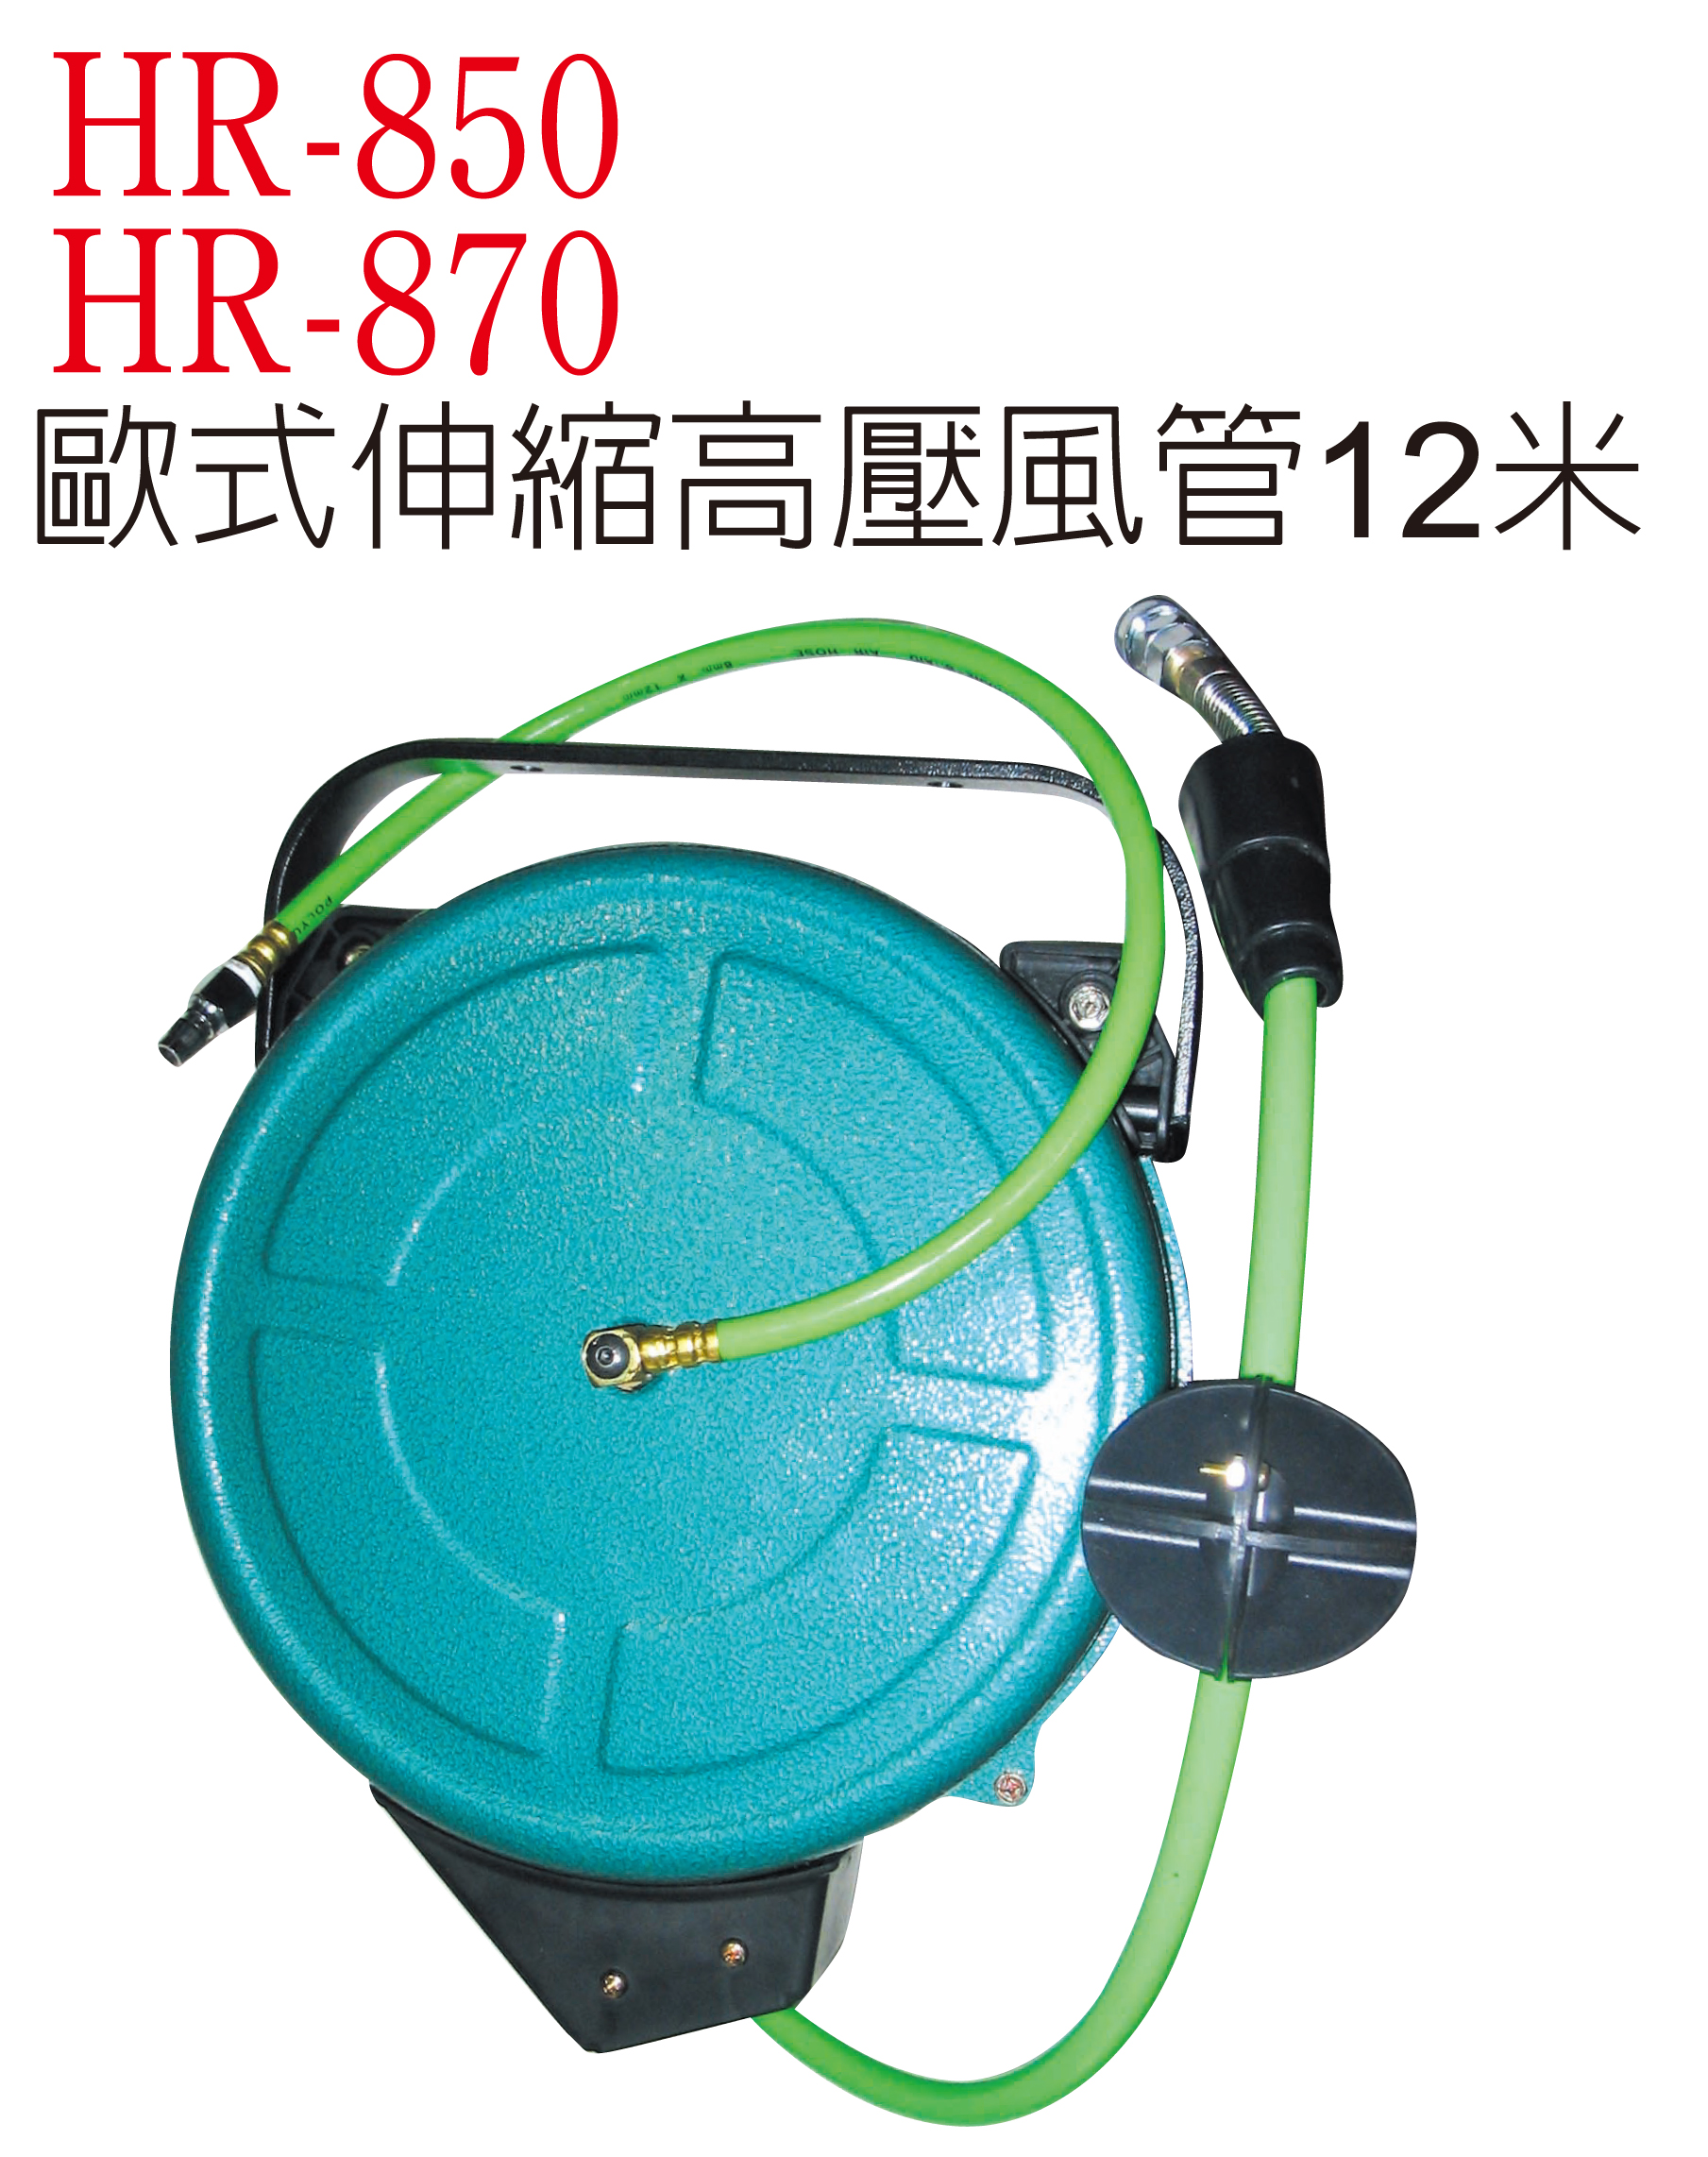 HR-850 高壓風管.jpg